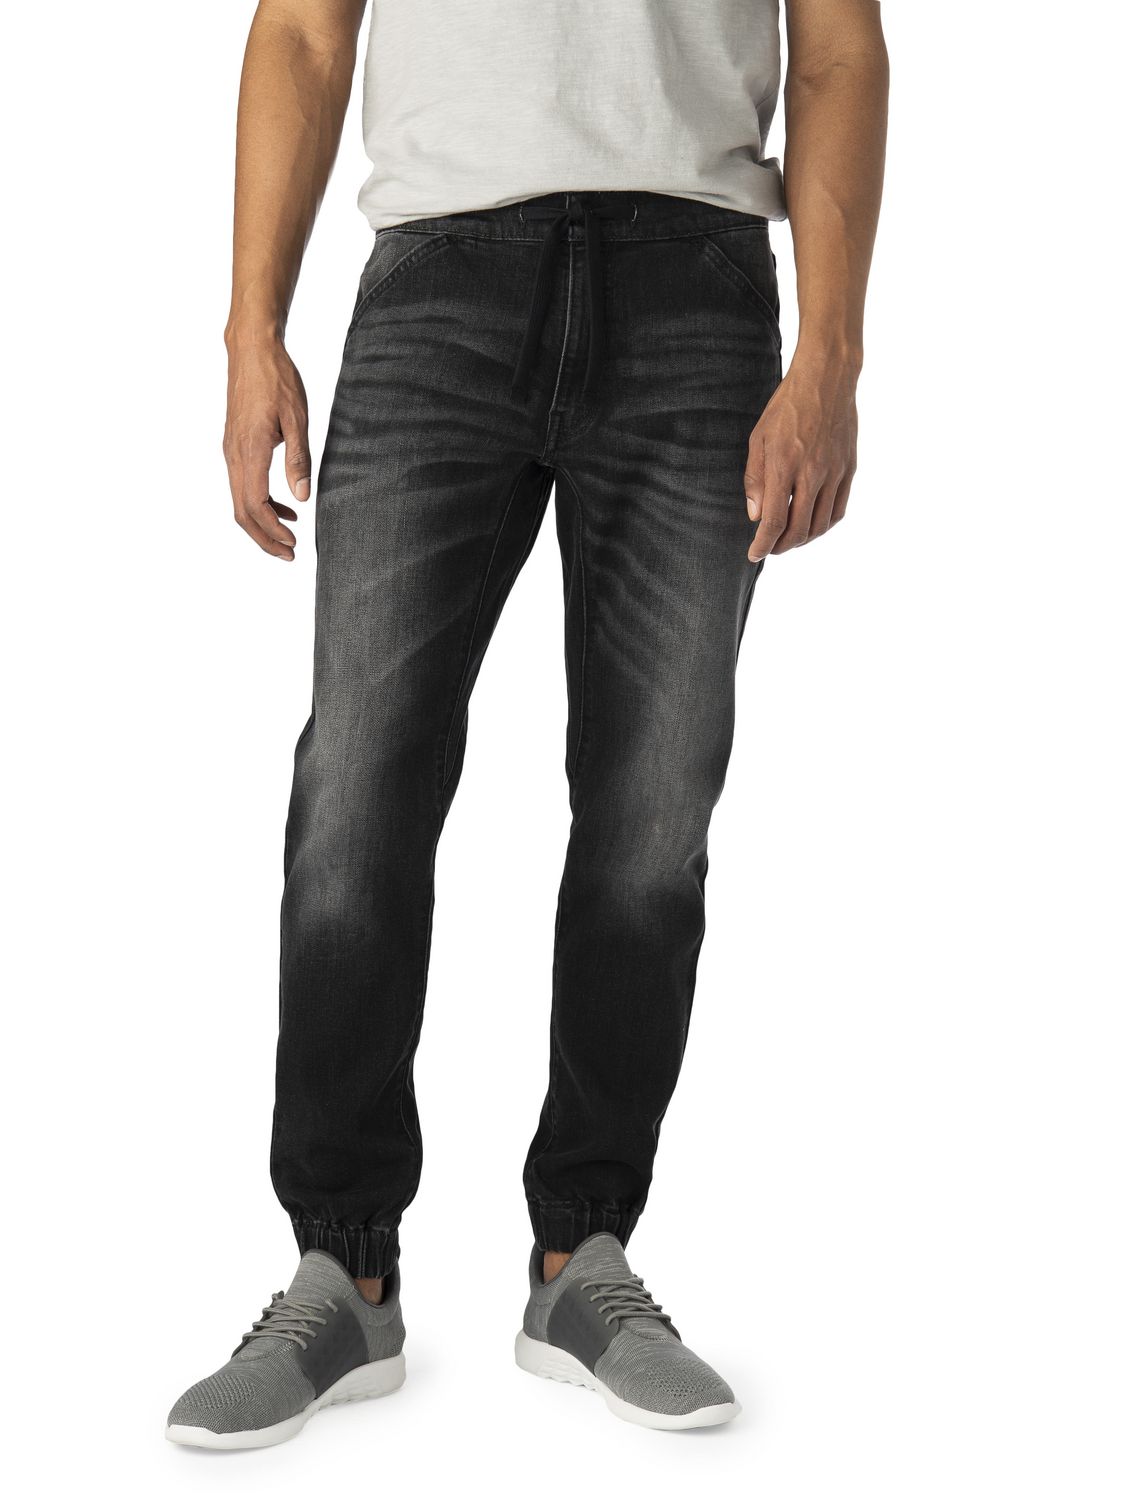 mens jogger jeans canada